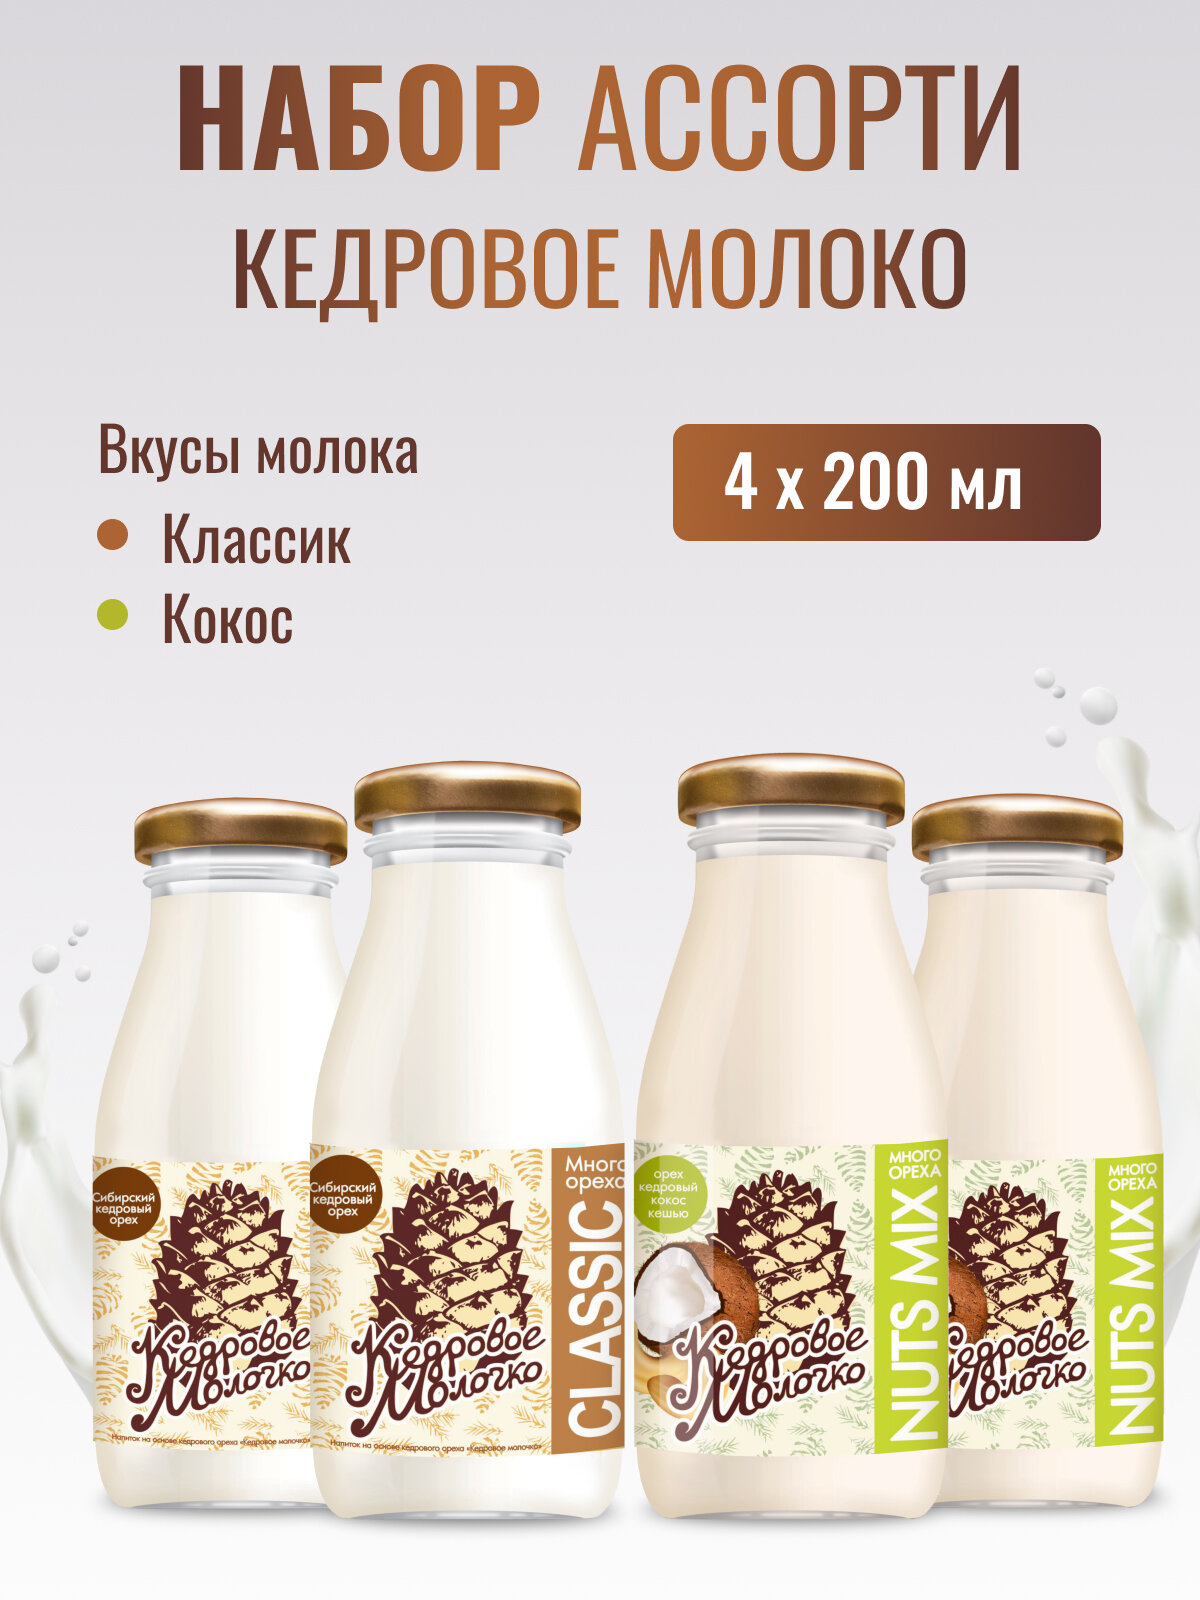 Кедровое молоко Ассорти Кокос Классик набор 4 шт